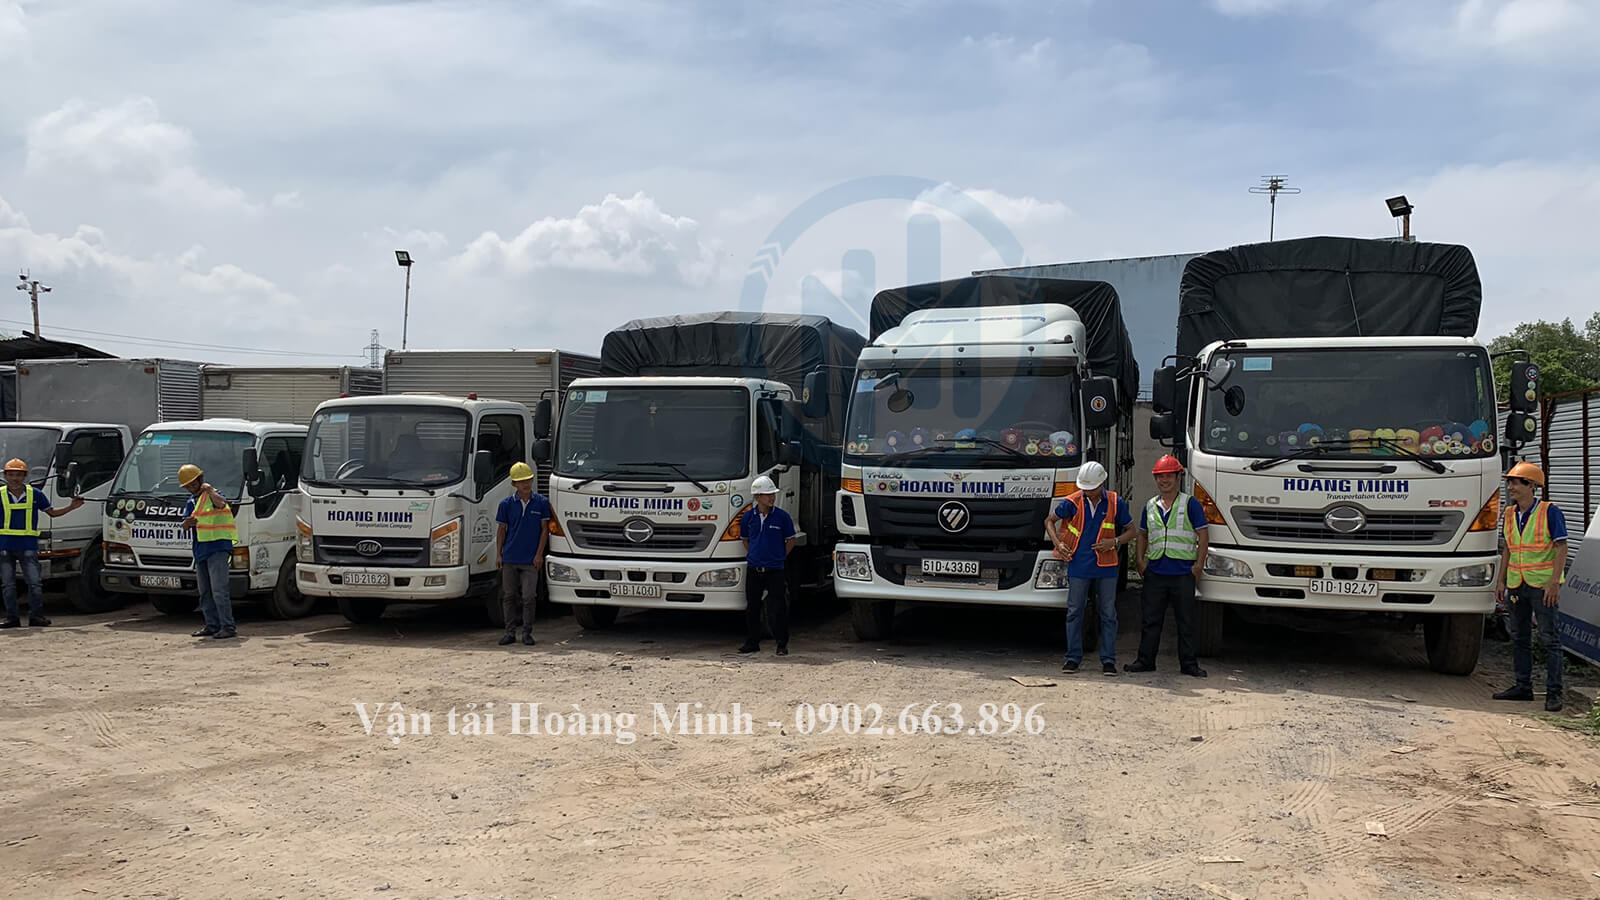 Dịch vụ cho thuê xe tải chở hàng Quận 1 của Vận tải Hoàng Minh